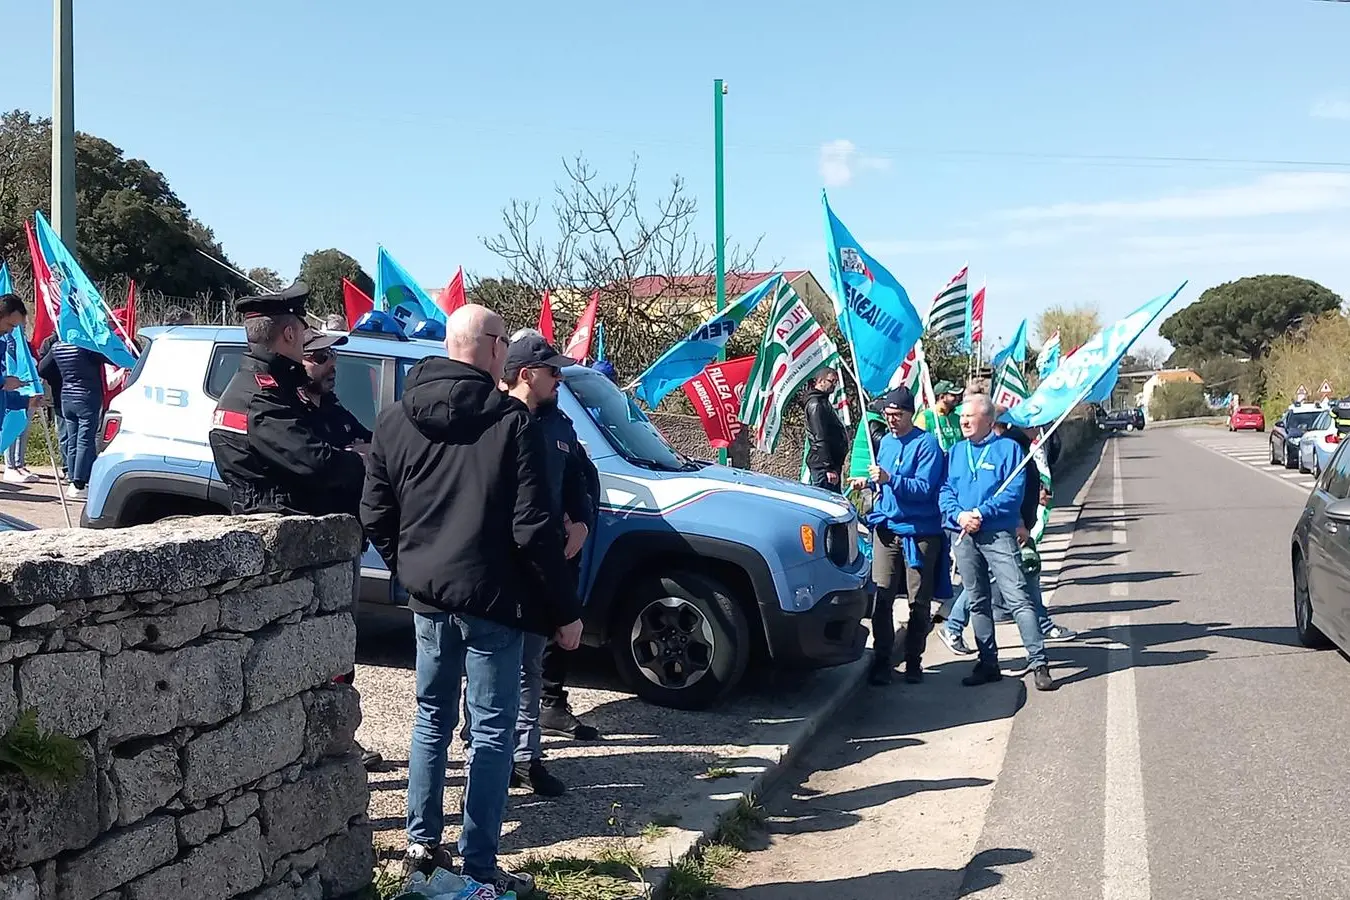 La protesta dei lavoratori a Calangianus (foto Busia)